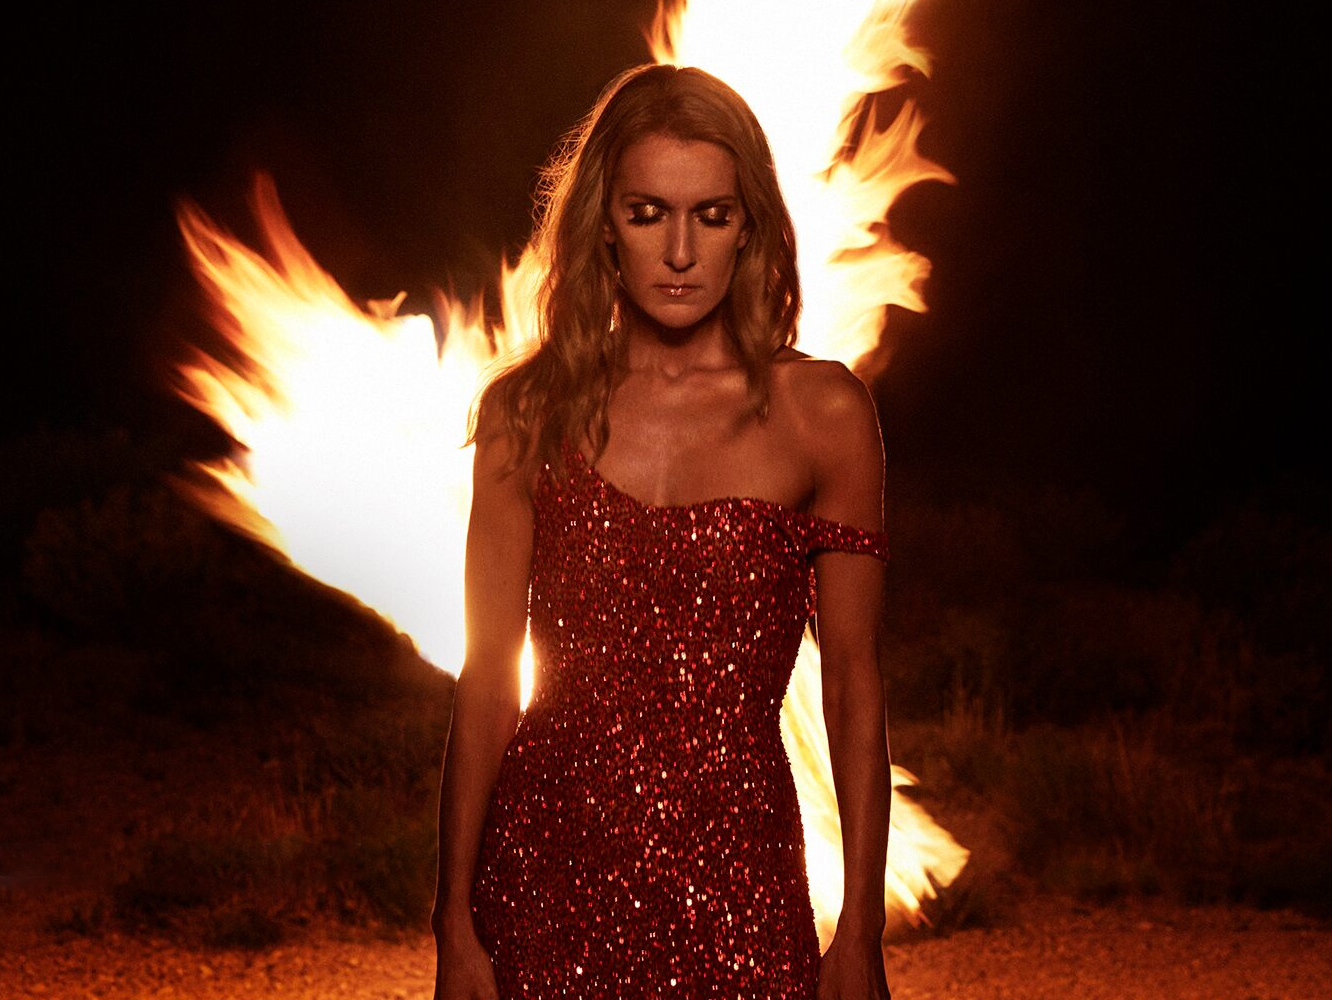  Los tres singles de comeback de Céline Dion ordenados del más flojo al más potente